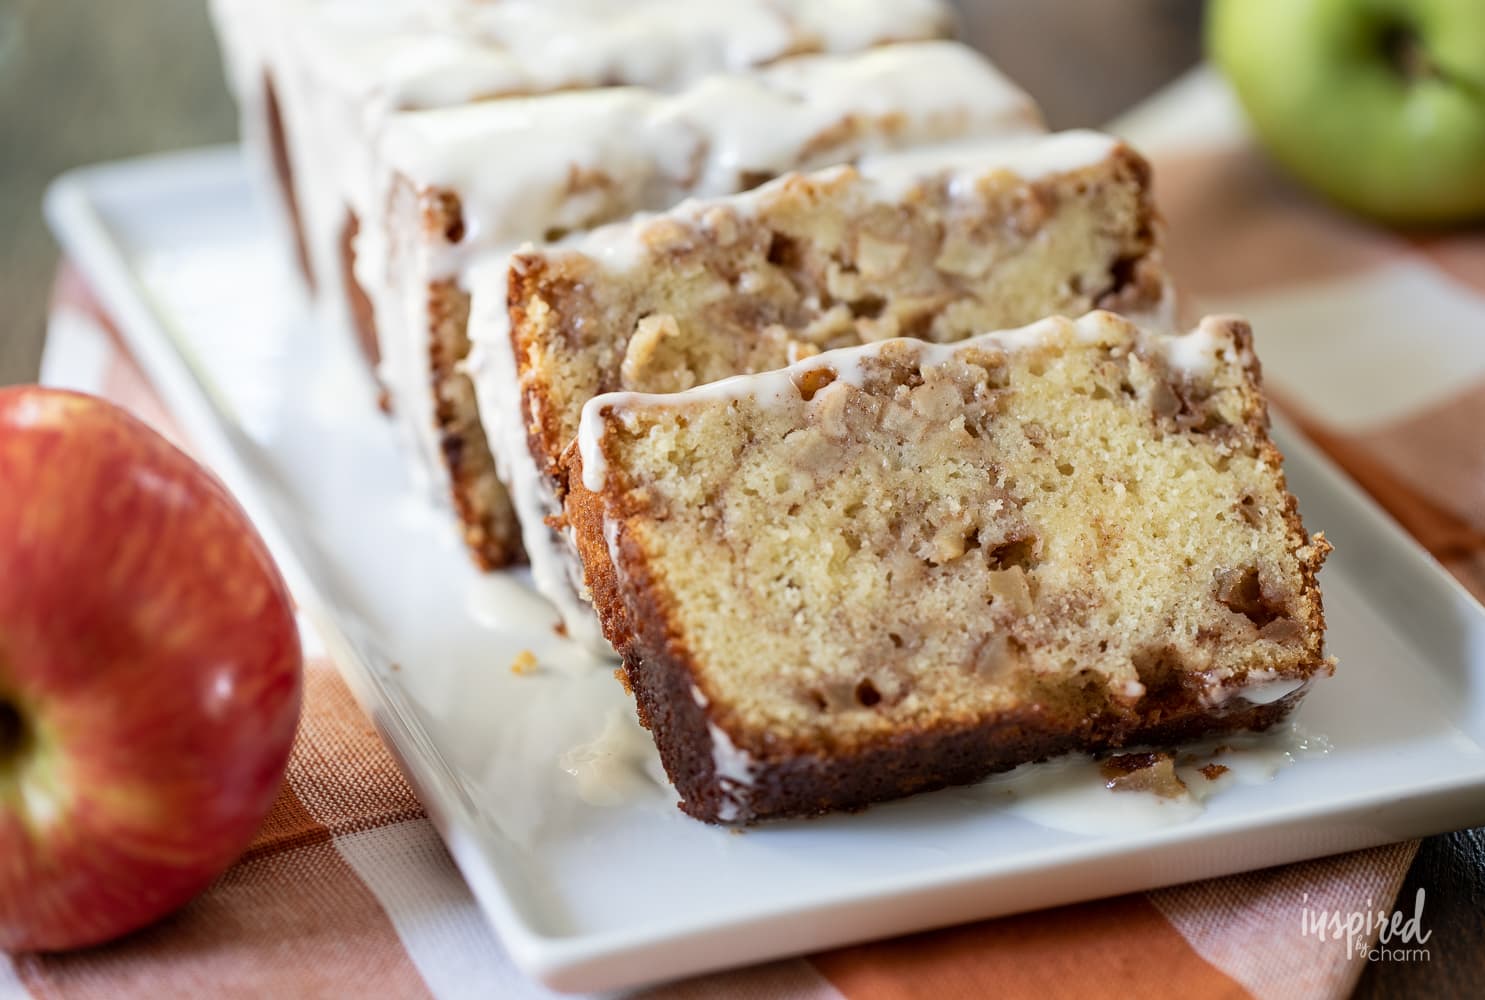 Delicious Apple Fritter Bread #quickbread #bread #apple #applefritter #fall #recipe #dessert #breakfast